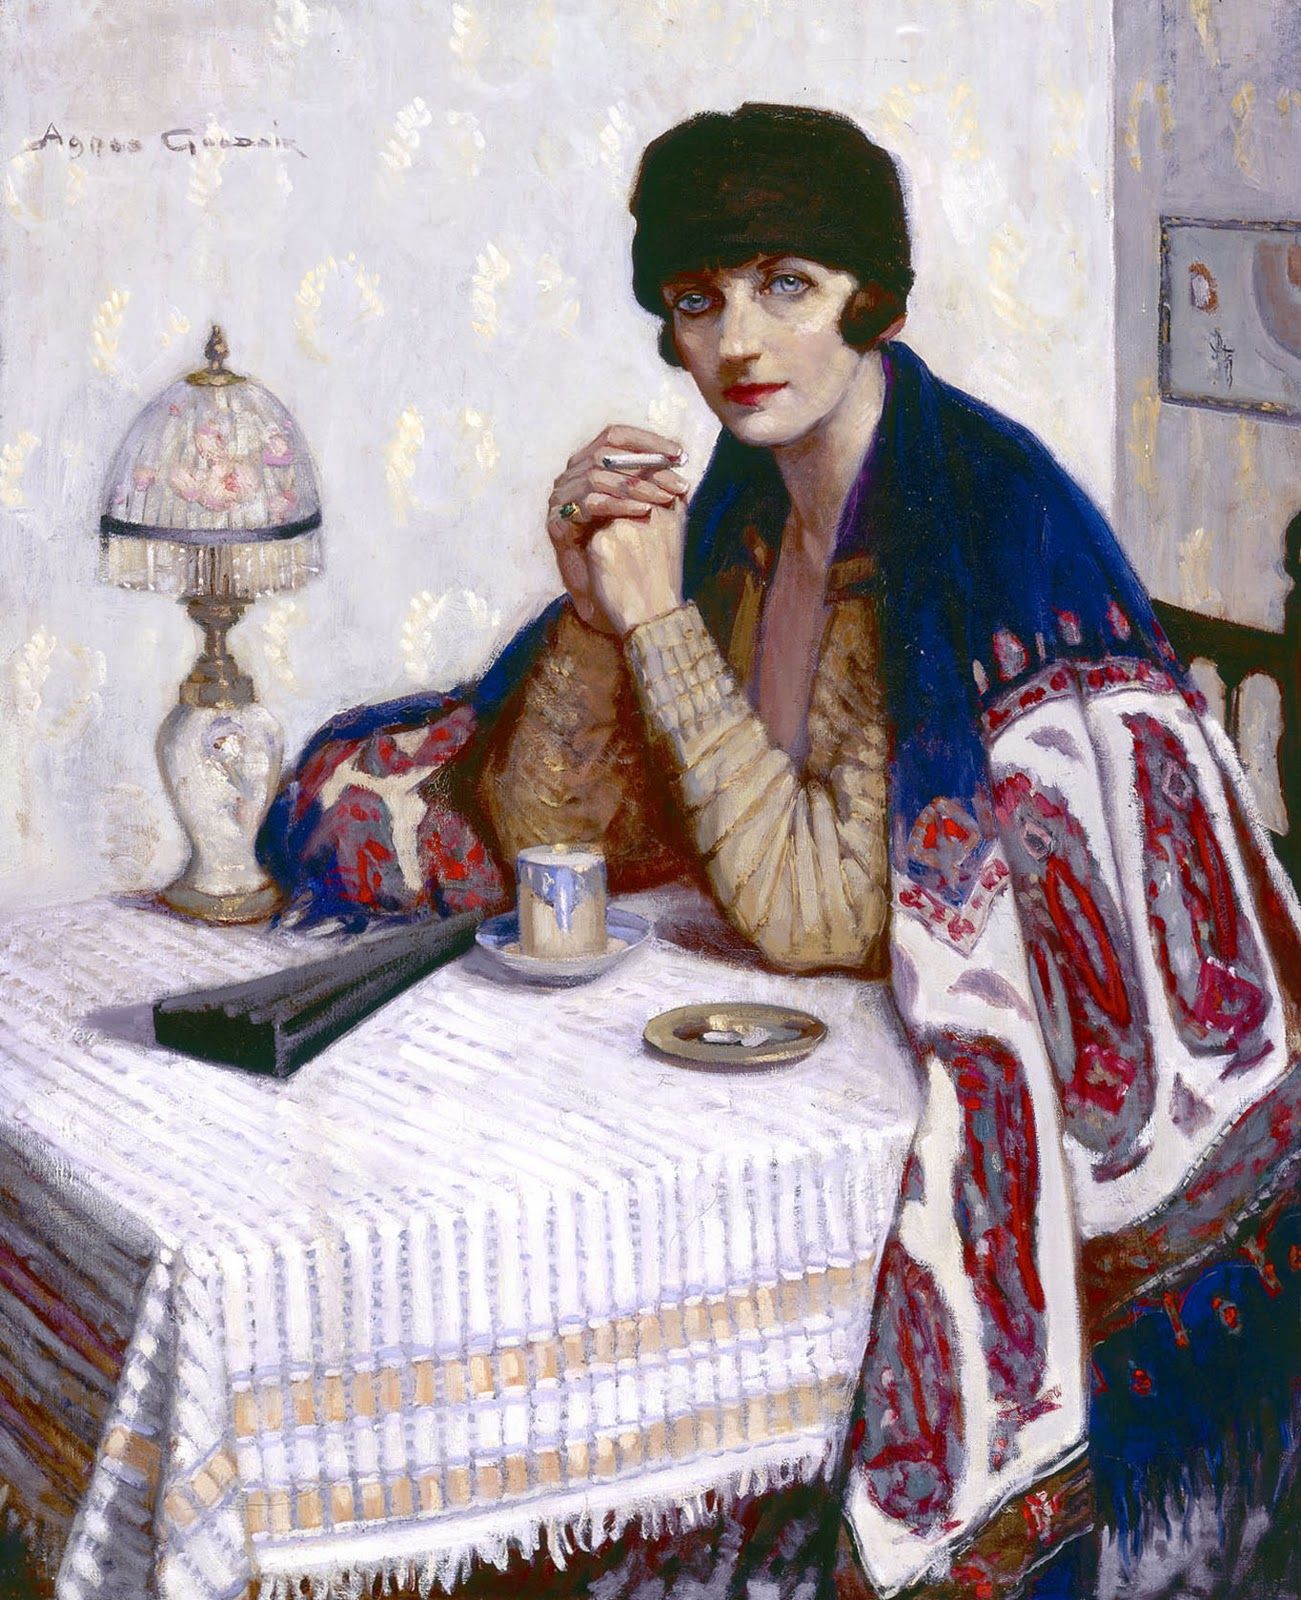 여인과 담배 by Agnes Goodsir - 1925 - 100 x 81cm 